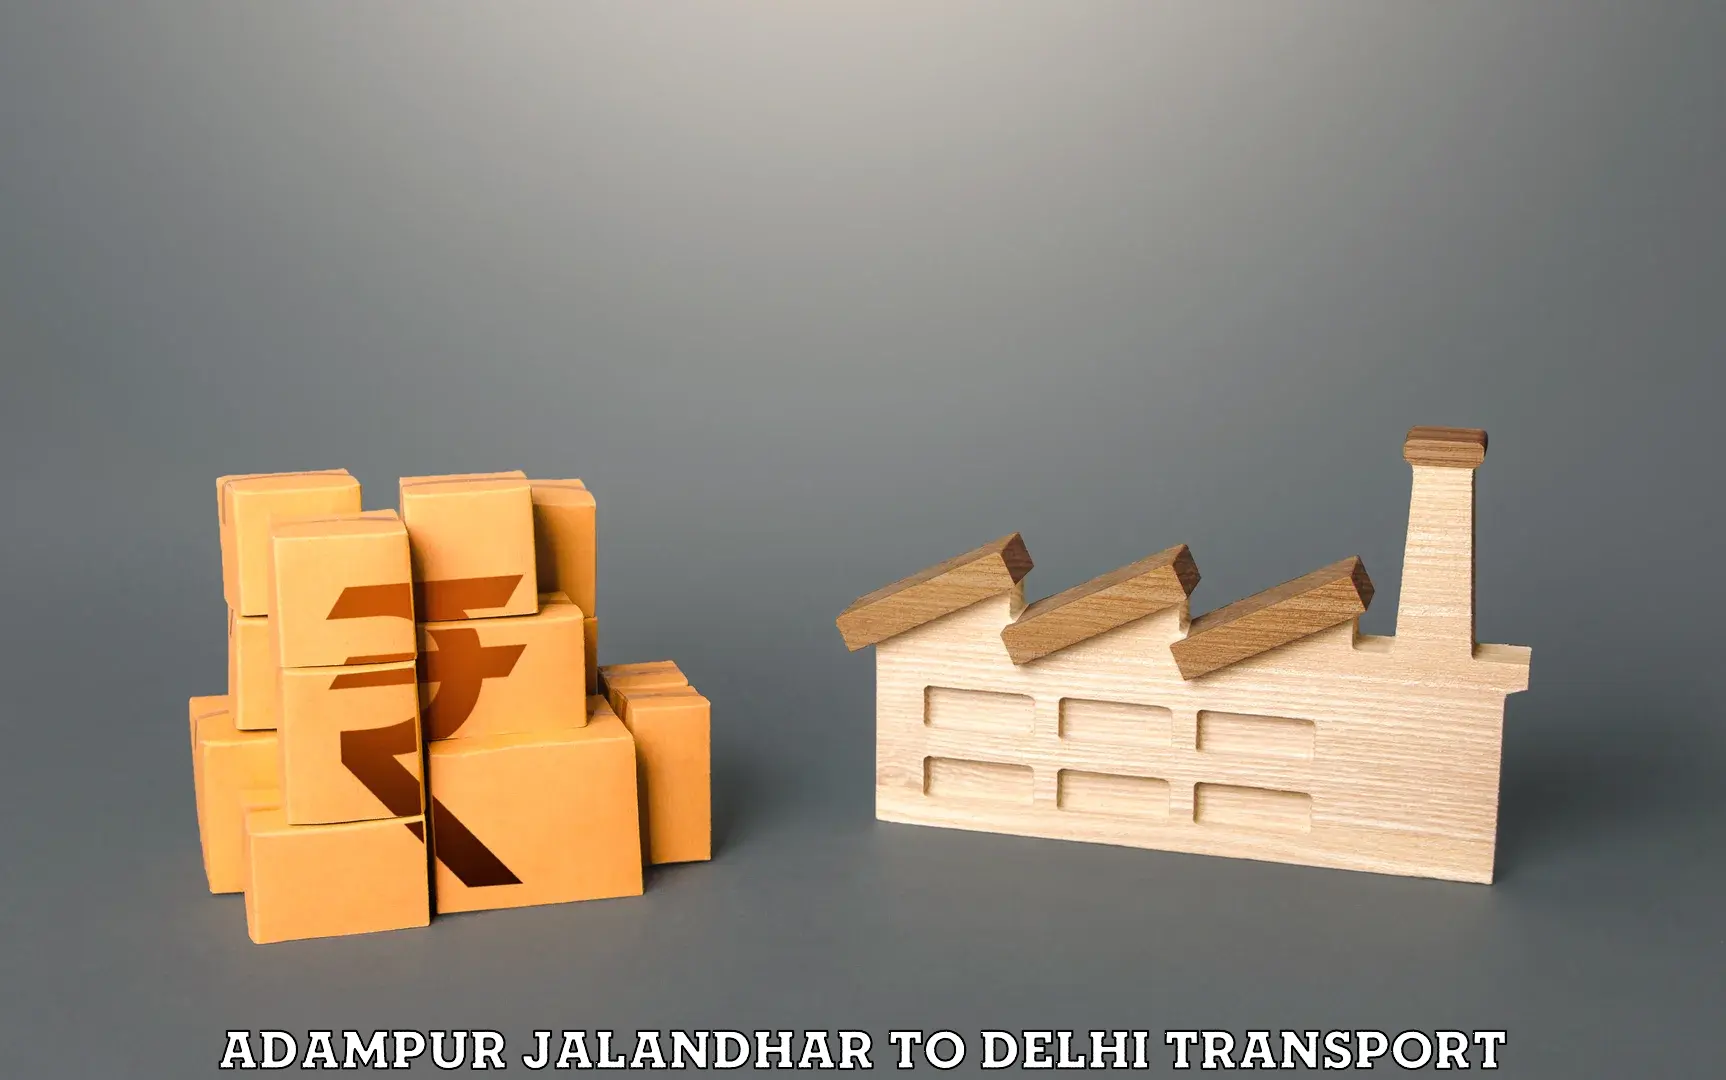 Daily transport service Adampur Jalandhar to Delhi Technological University DTU